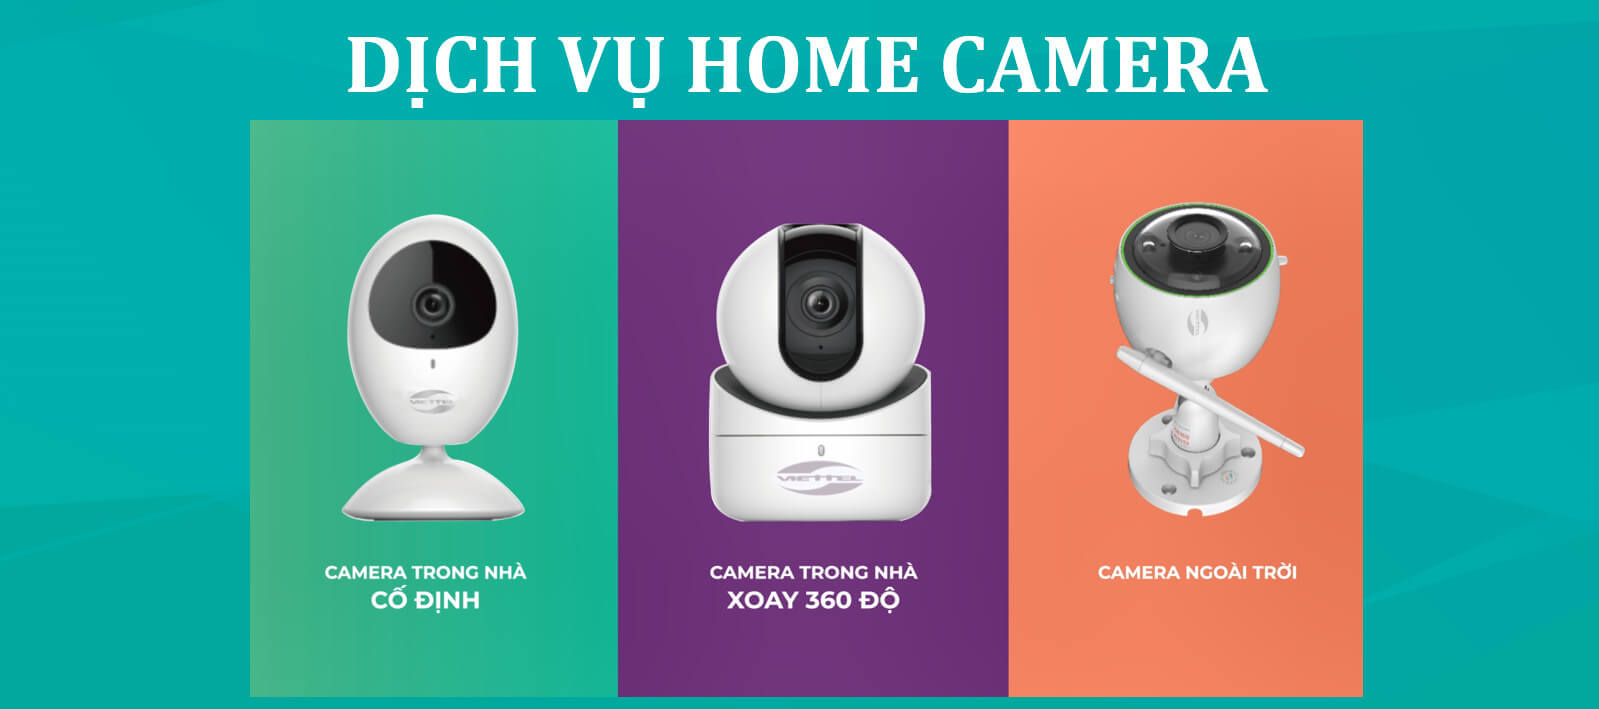 Dịch vụ lắp đặt Home Camera Viettel – Giải pháp giám sát thông minh tích hợp AI